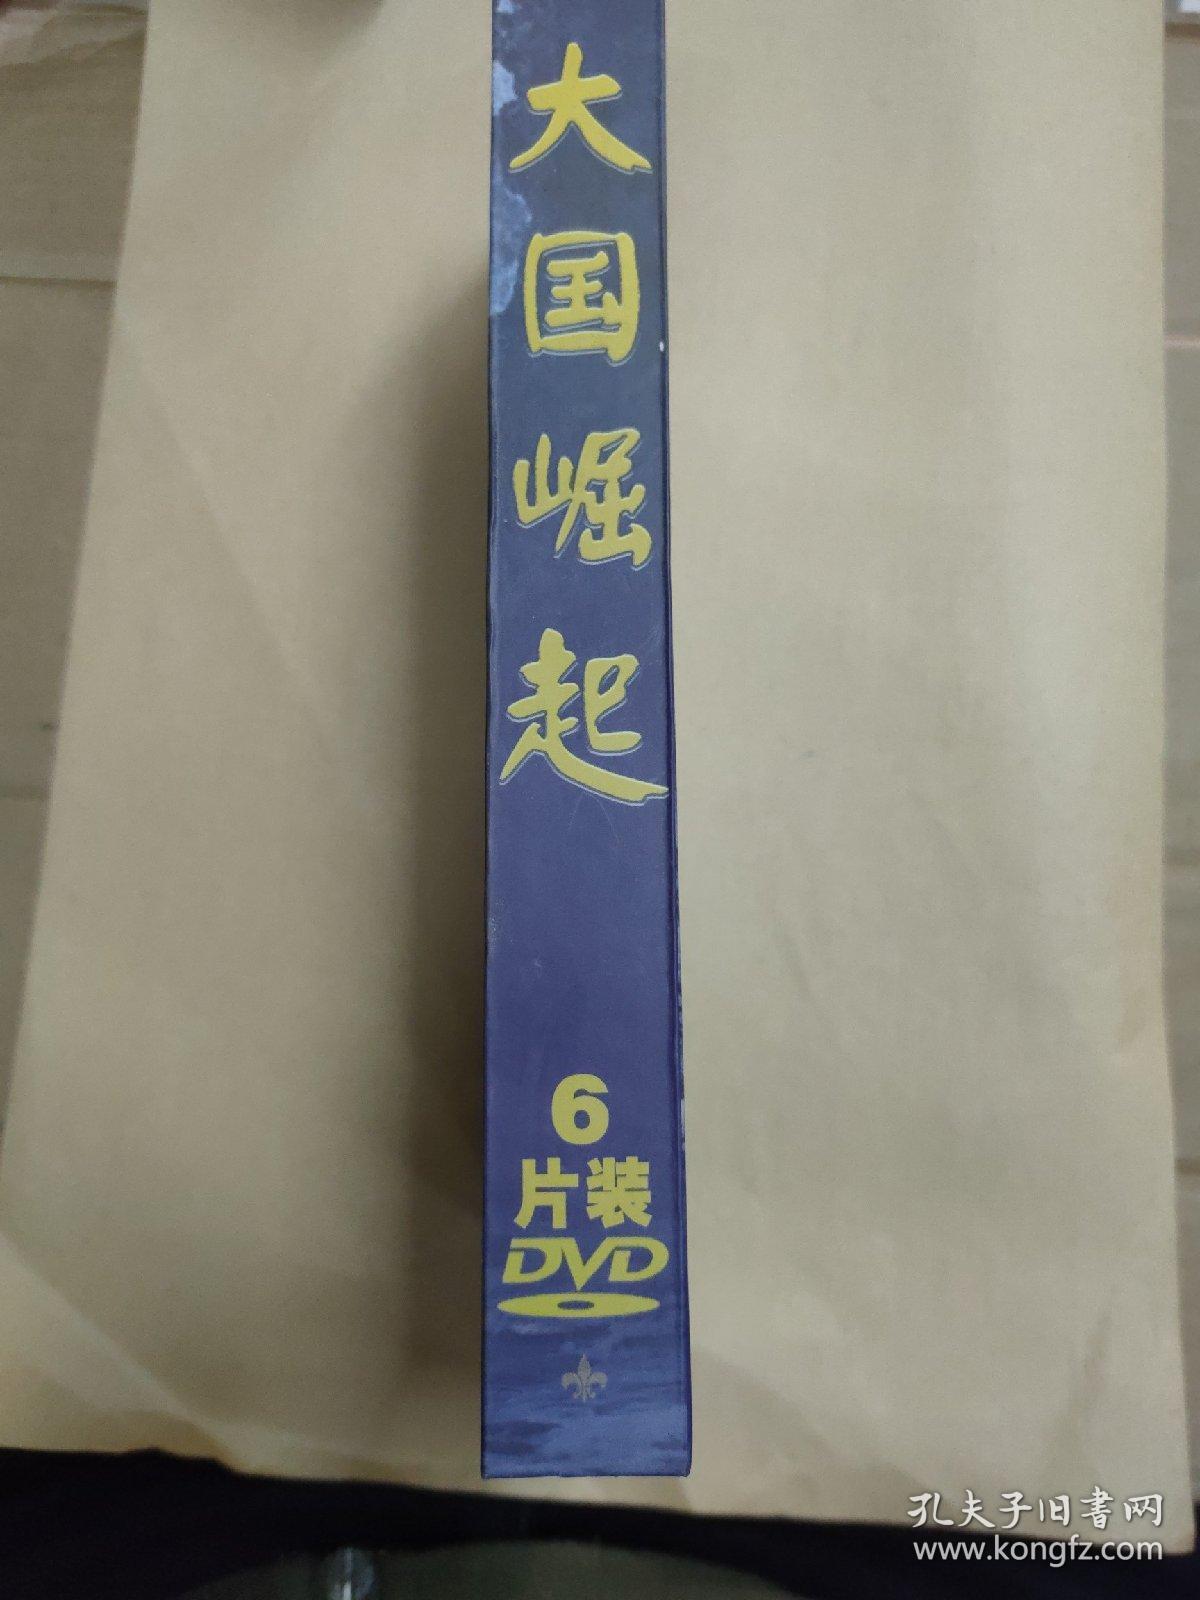 【正版无划痕】CCTV十二集大型电视纪录片《大国崛起》/6片装DVD